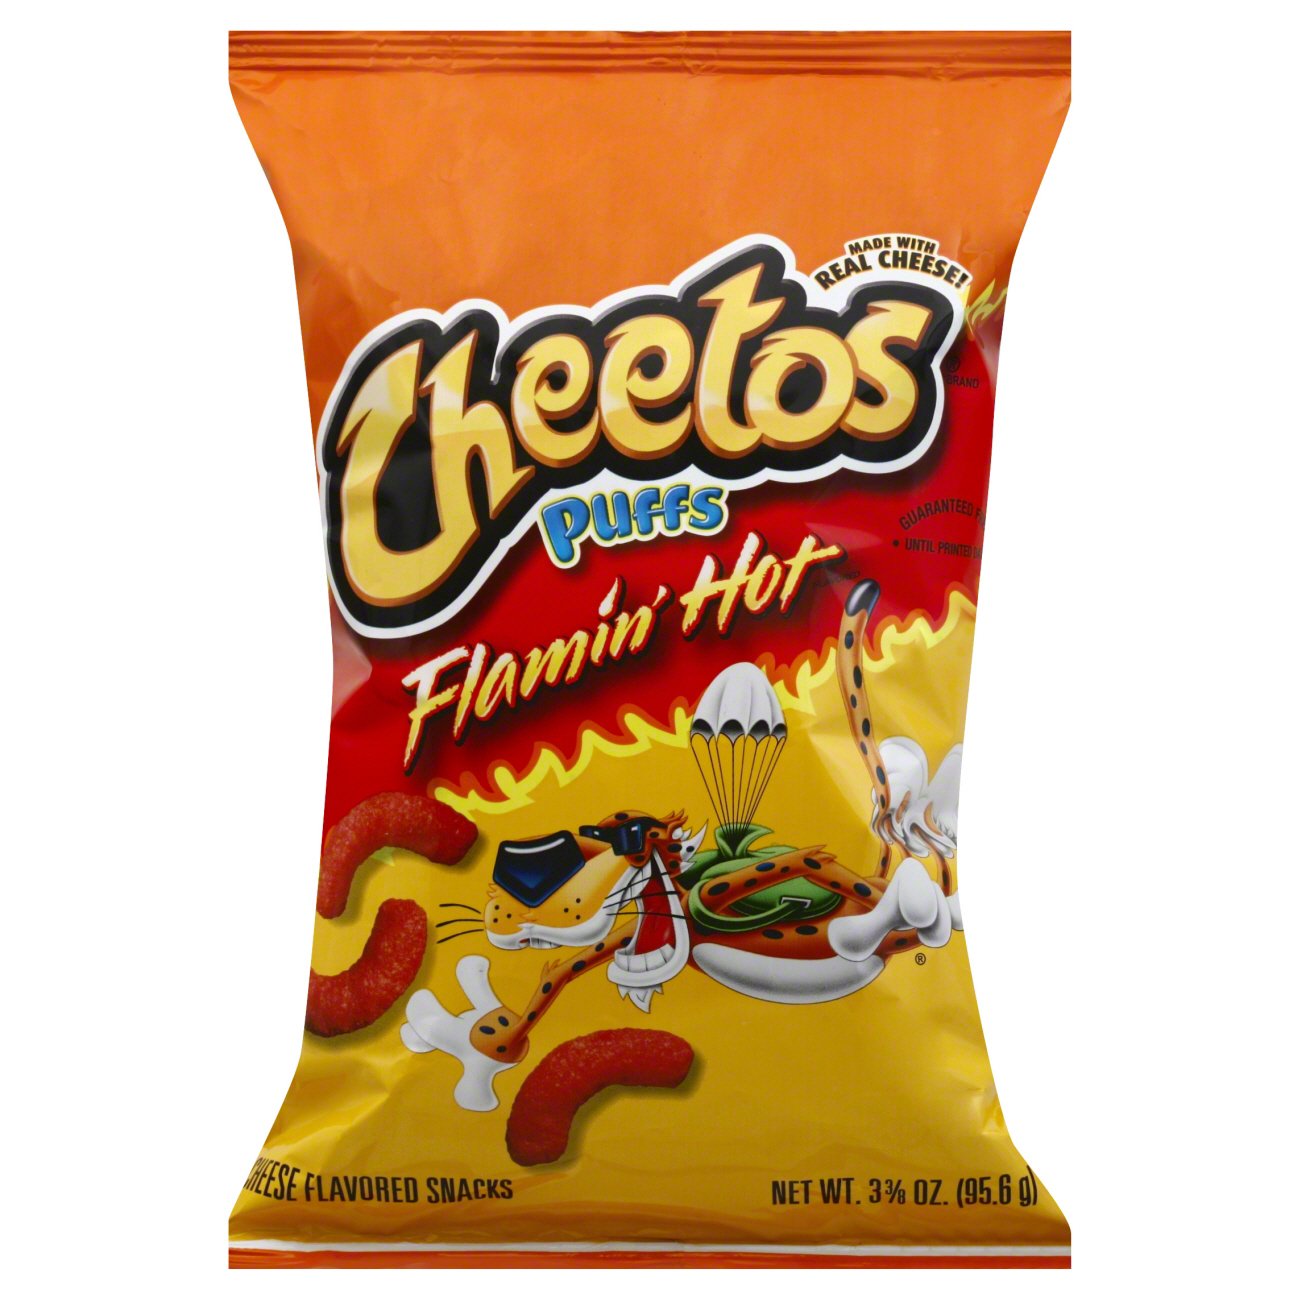 Cheetos Puffs Flamin Hot Cheese Snacks Shop Chips At H E B